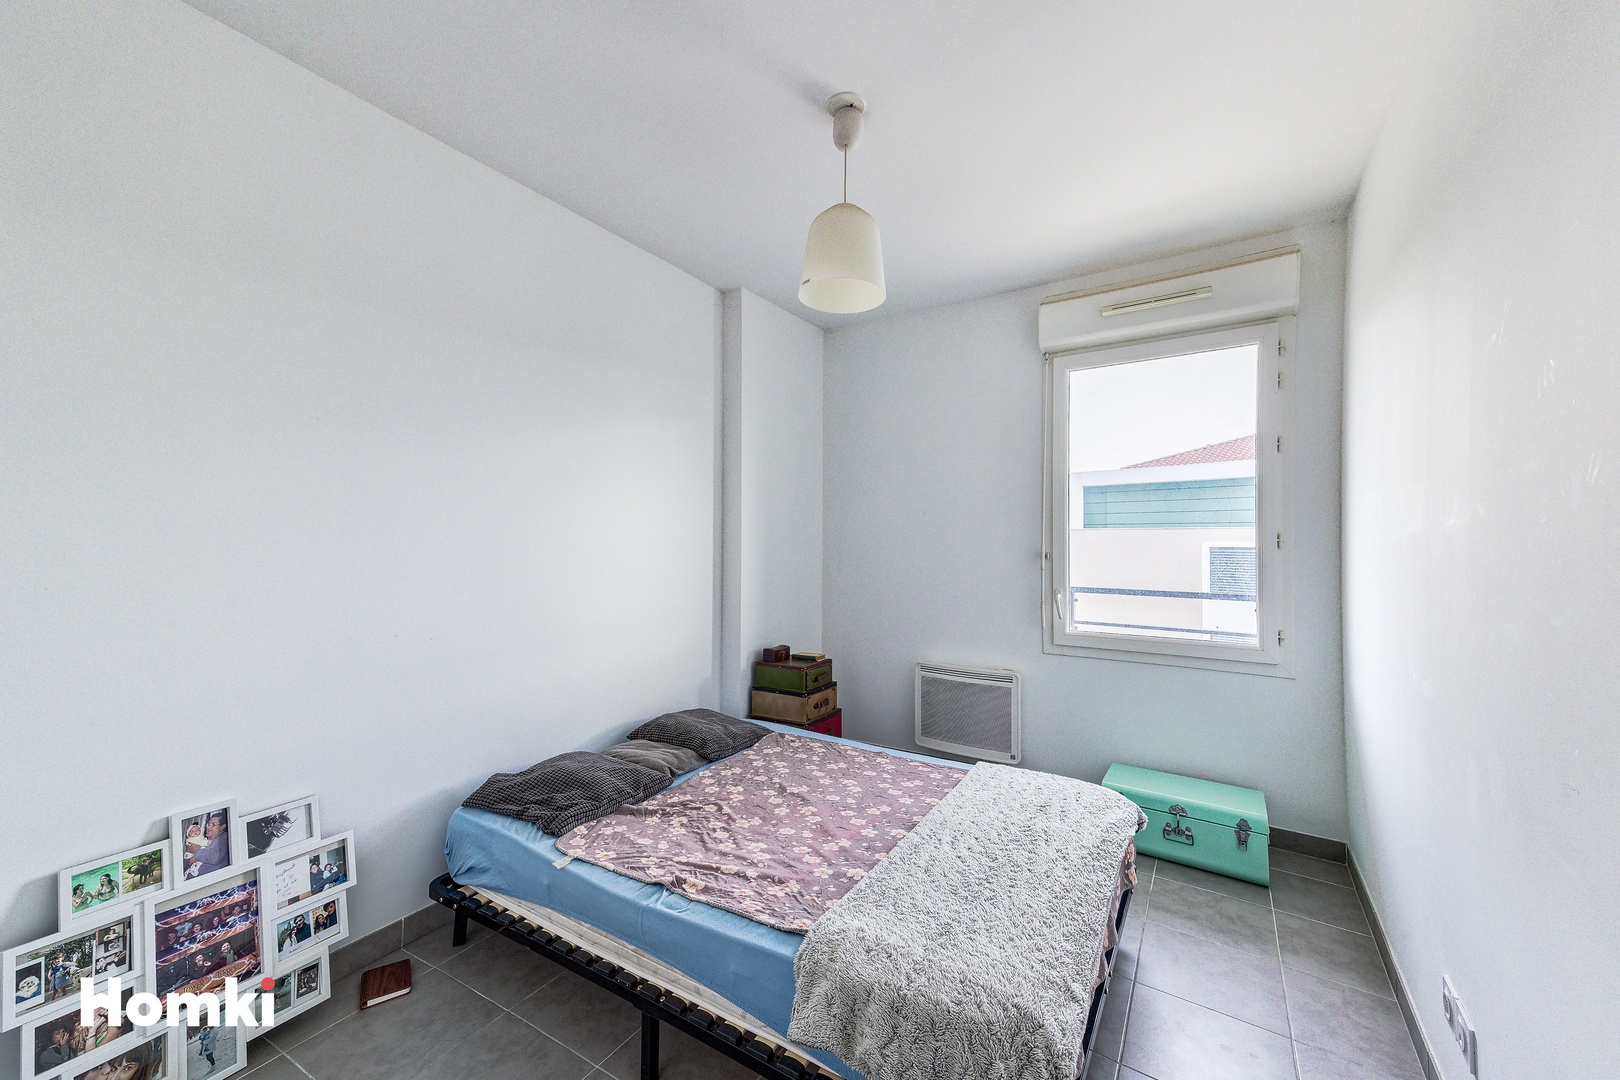 Homki - Vente Appartement  de 57.0 m² à Marseille 13013